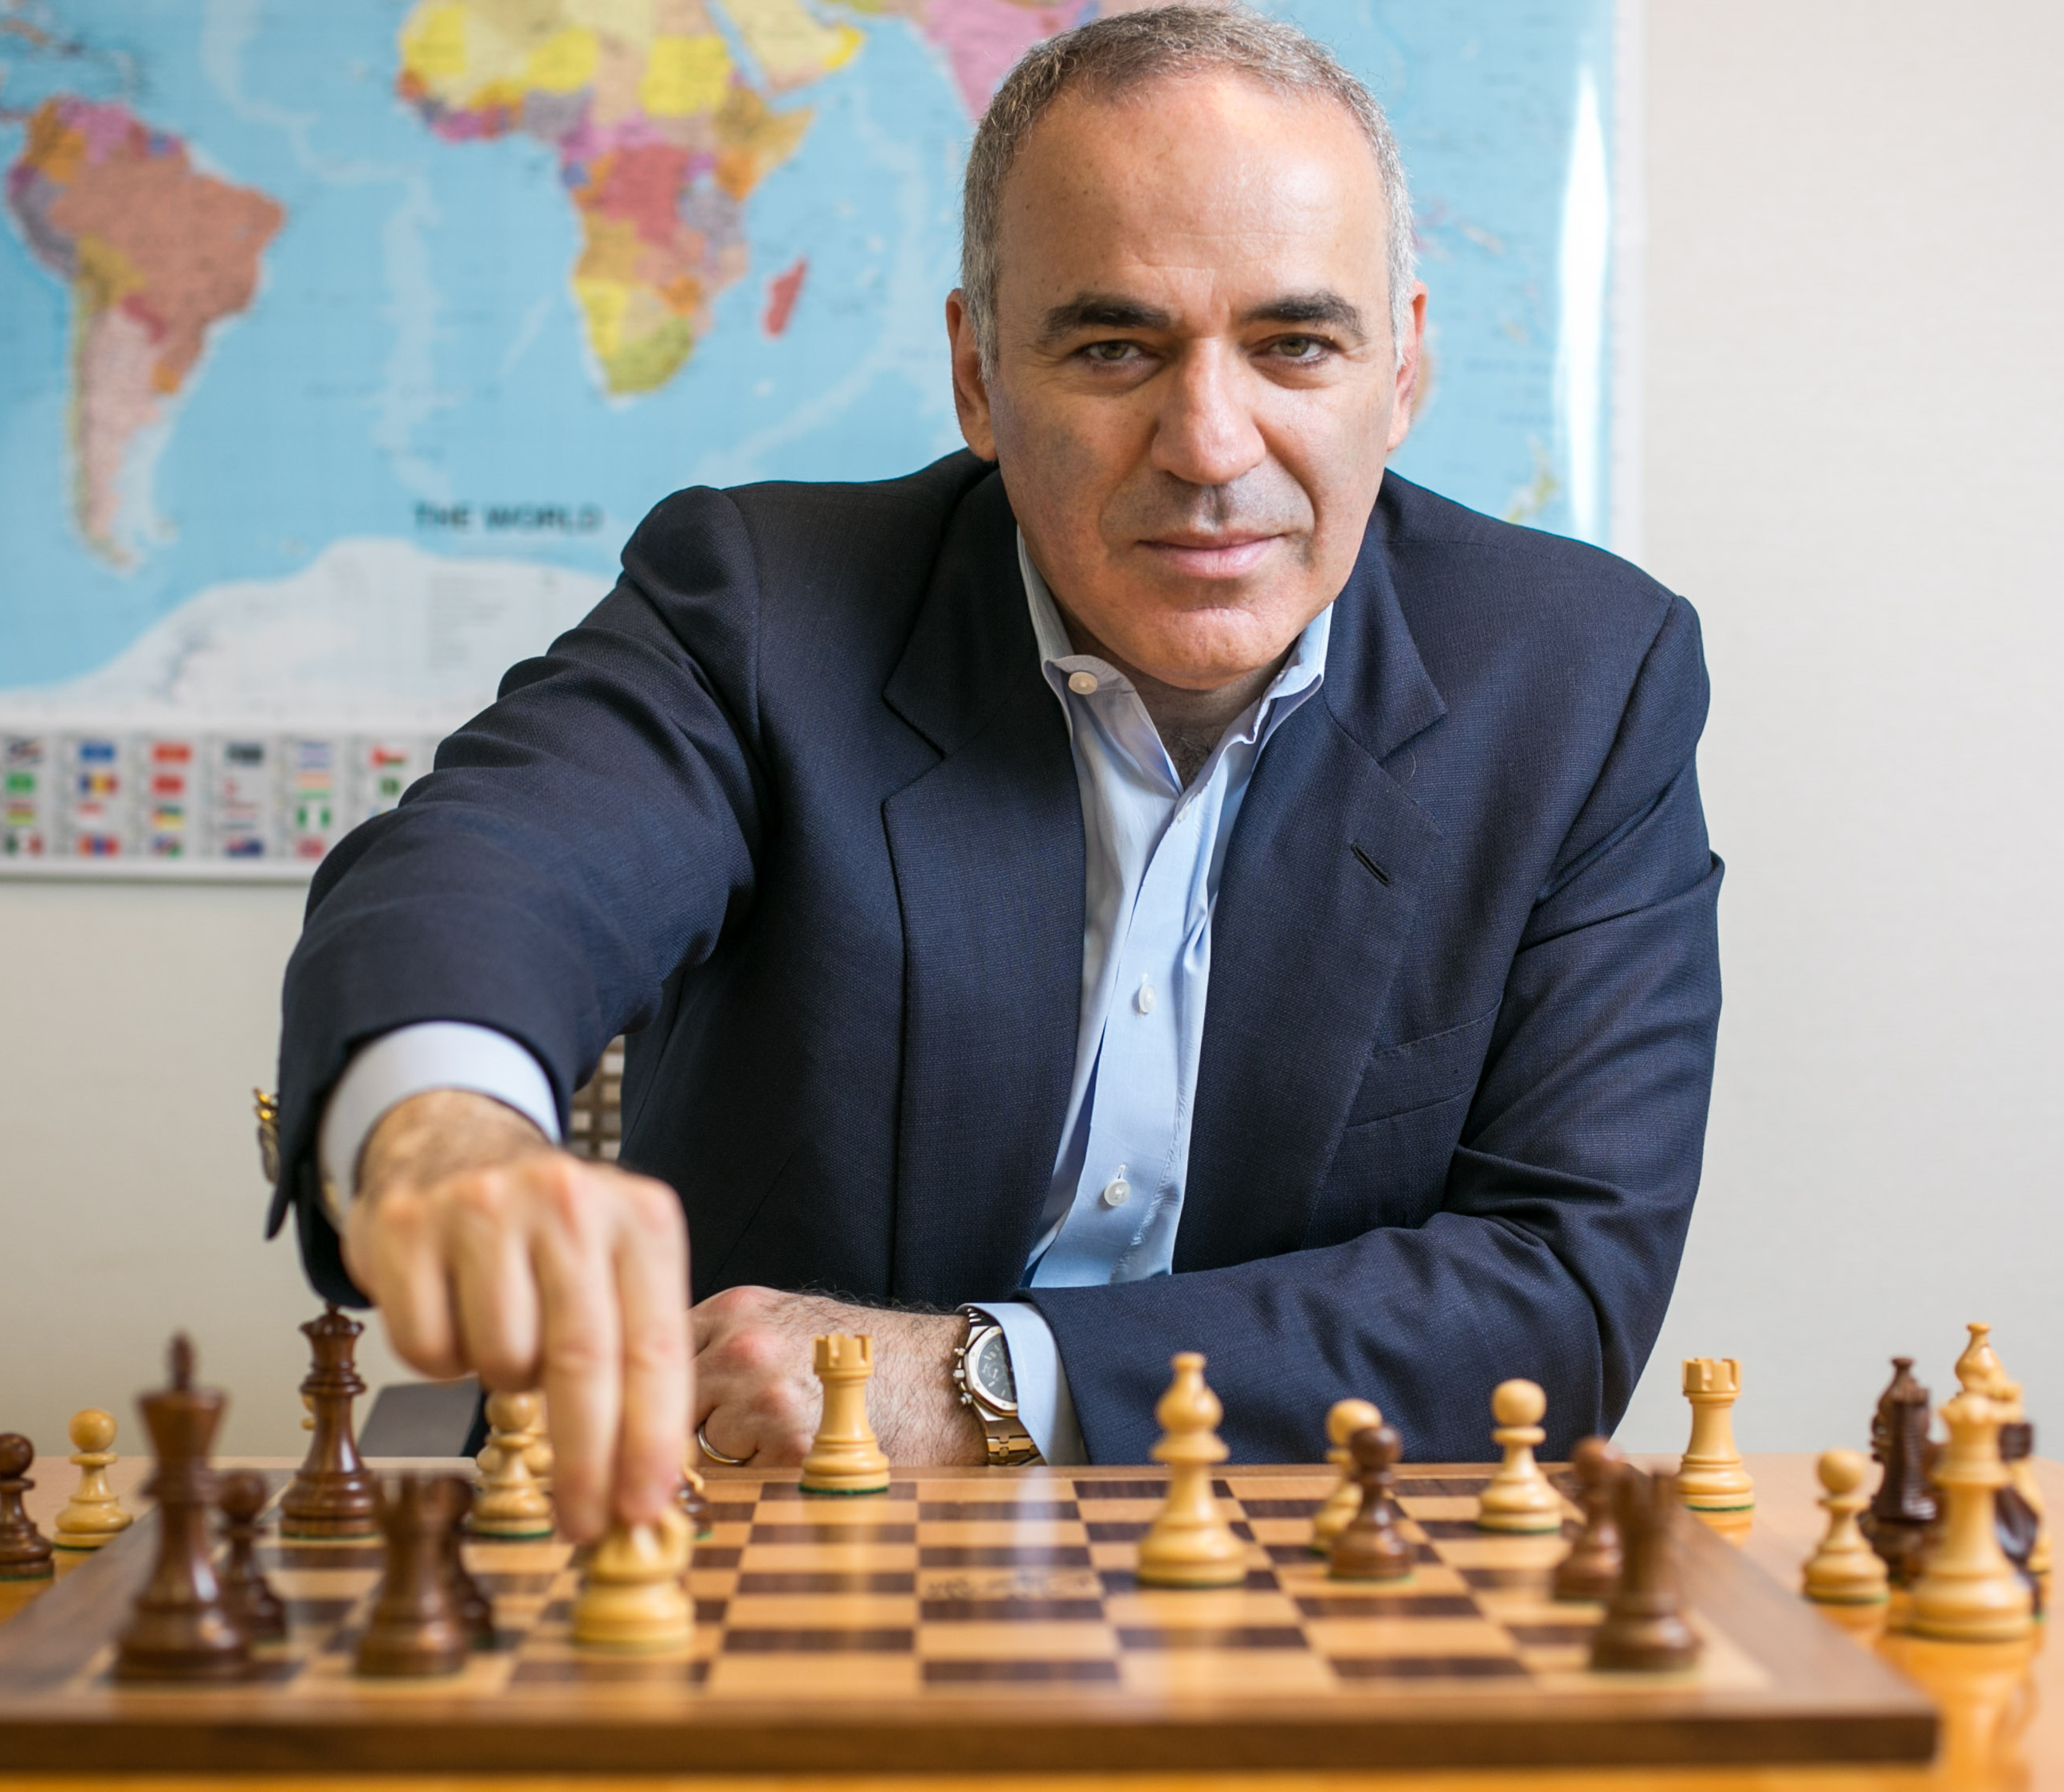 Garry Kasparov, Everything Chess Wiki